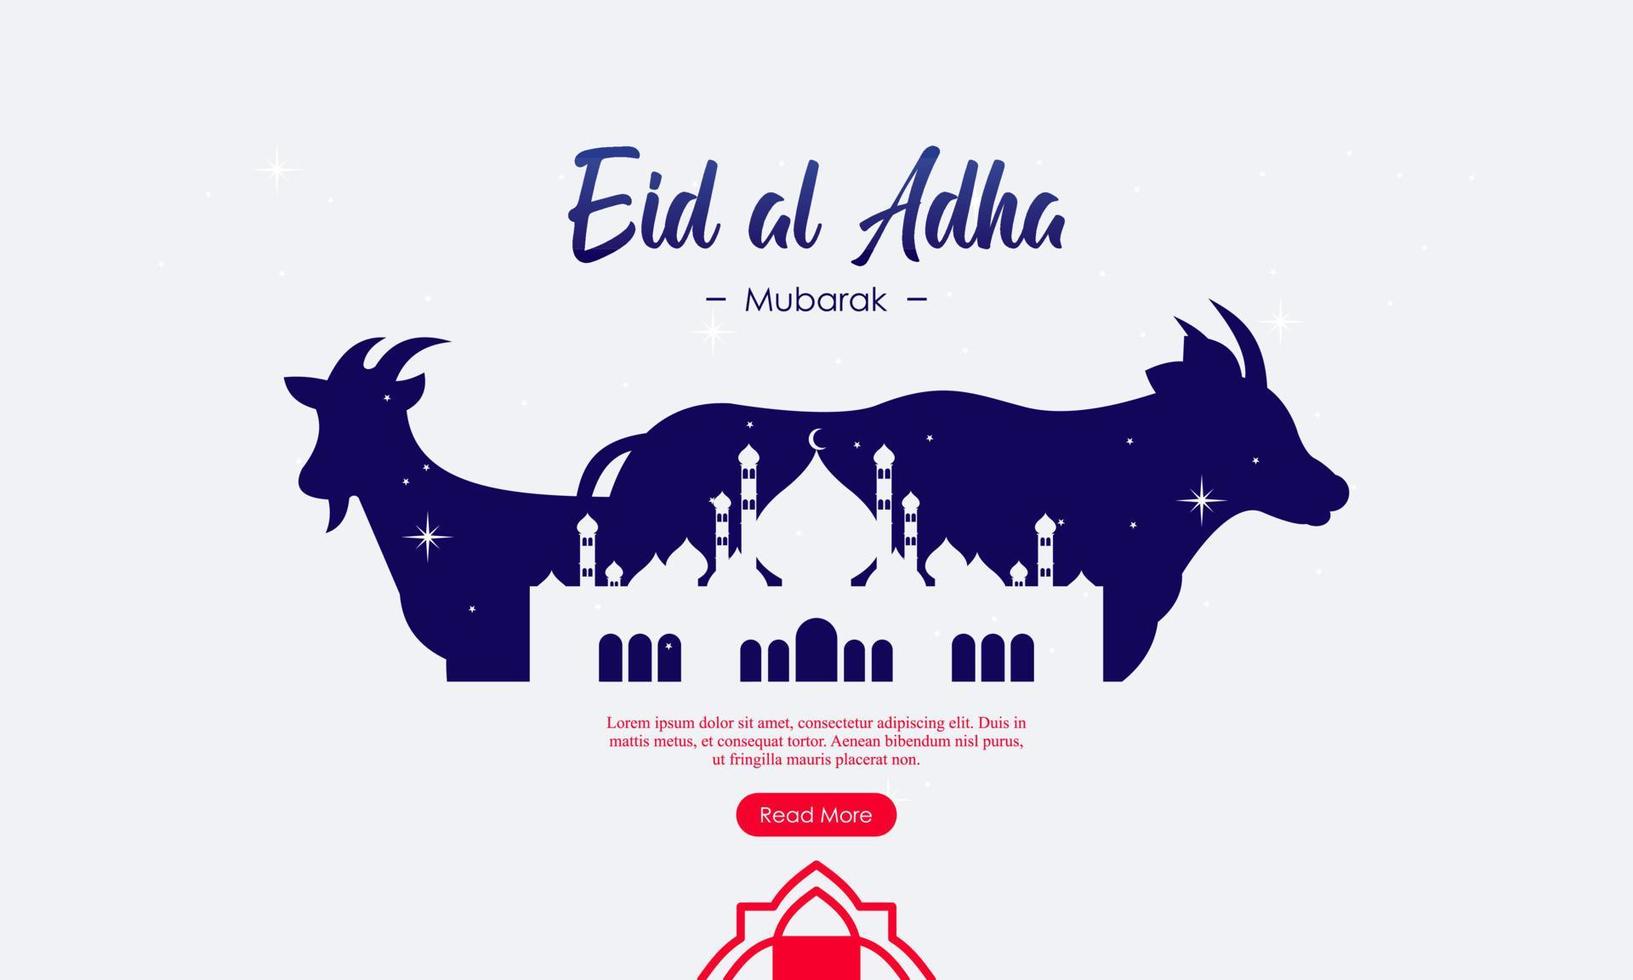 modello di banner per social media del festival islamico eid al adha mubarak vettore